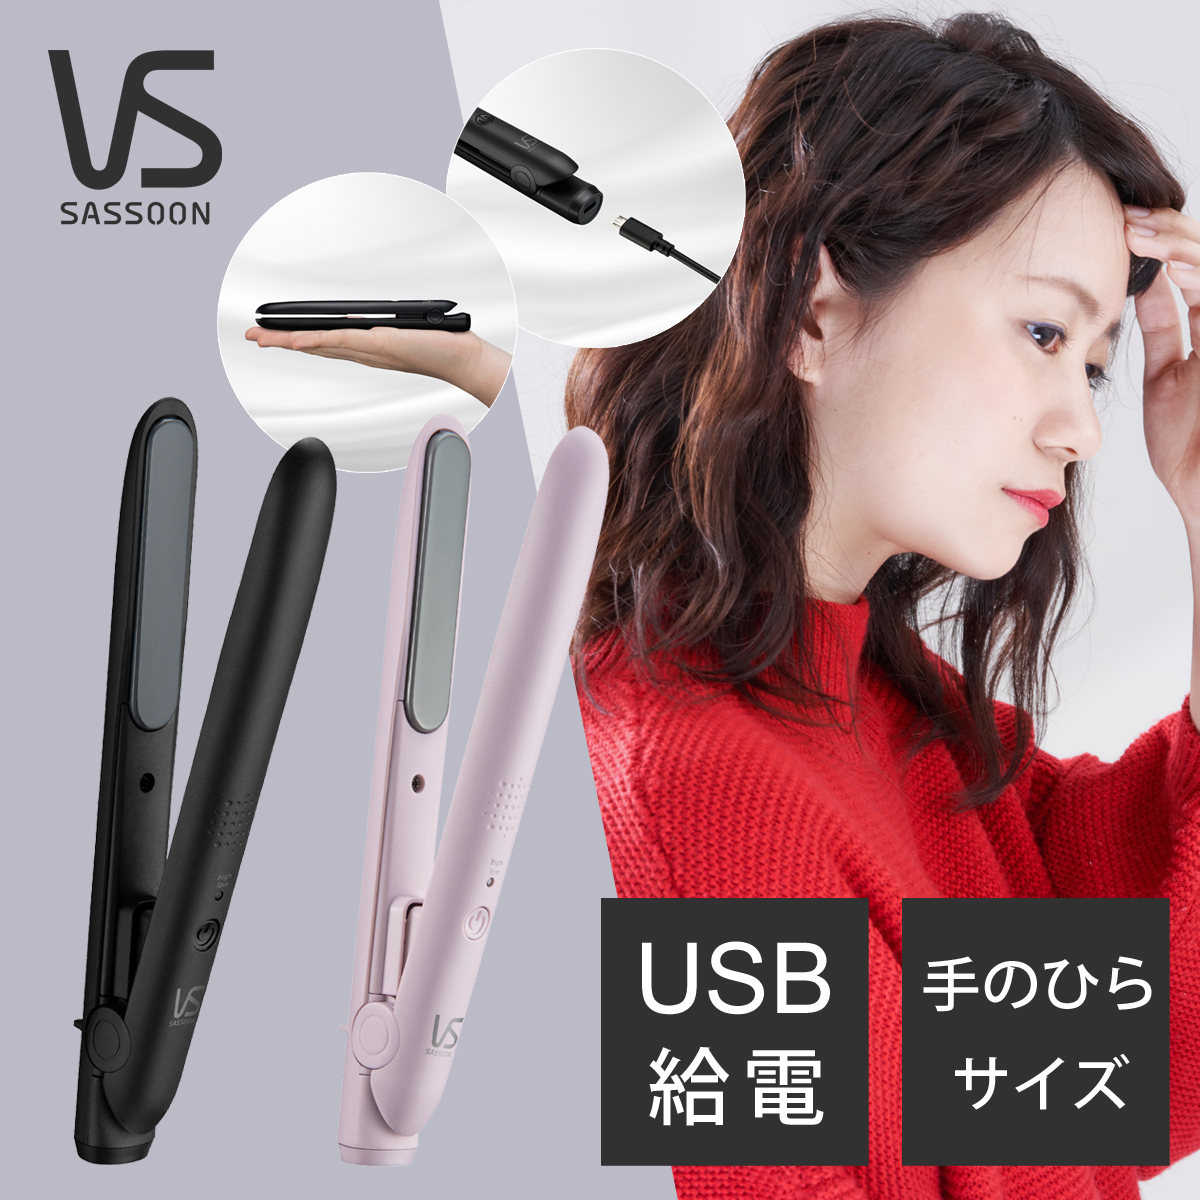 ヴィダルサスーン ミニ ヘアアイロン USB 給電 海外対応 モバイルバッテリー VSI-1050 KJ PJ ヘアーアイロン ストレートアイロン 海外 兼用 旅行 前髪 軽量 コンパクト コテ VS VSI1050